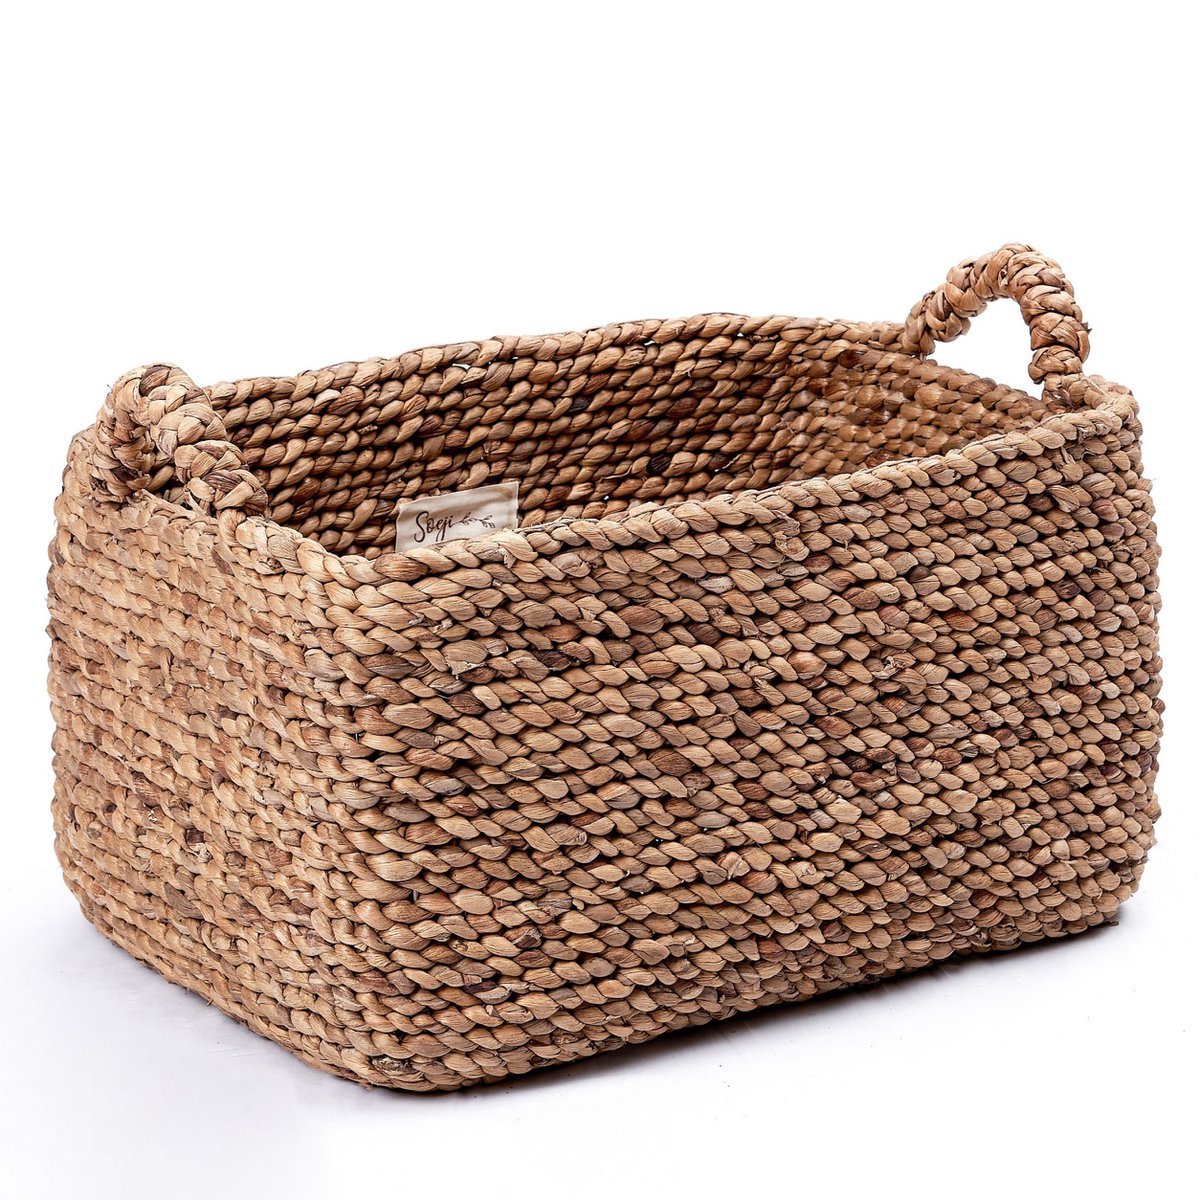 TANIMBAR storage basket made of water hyacinth